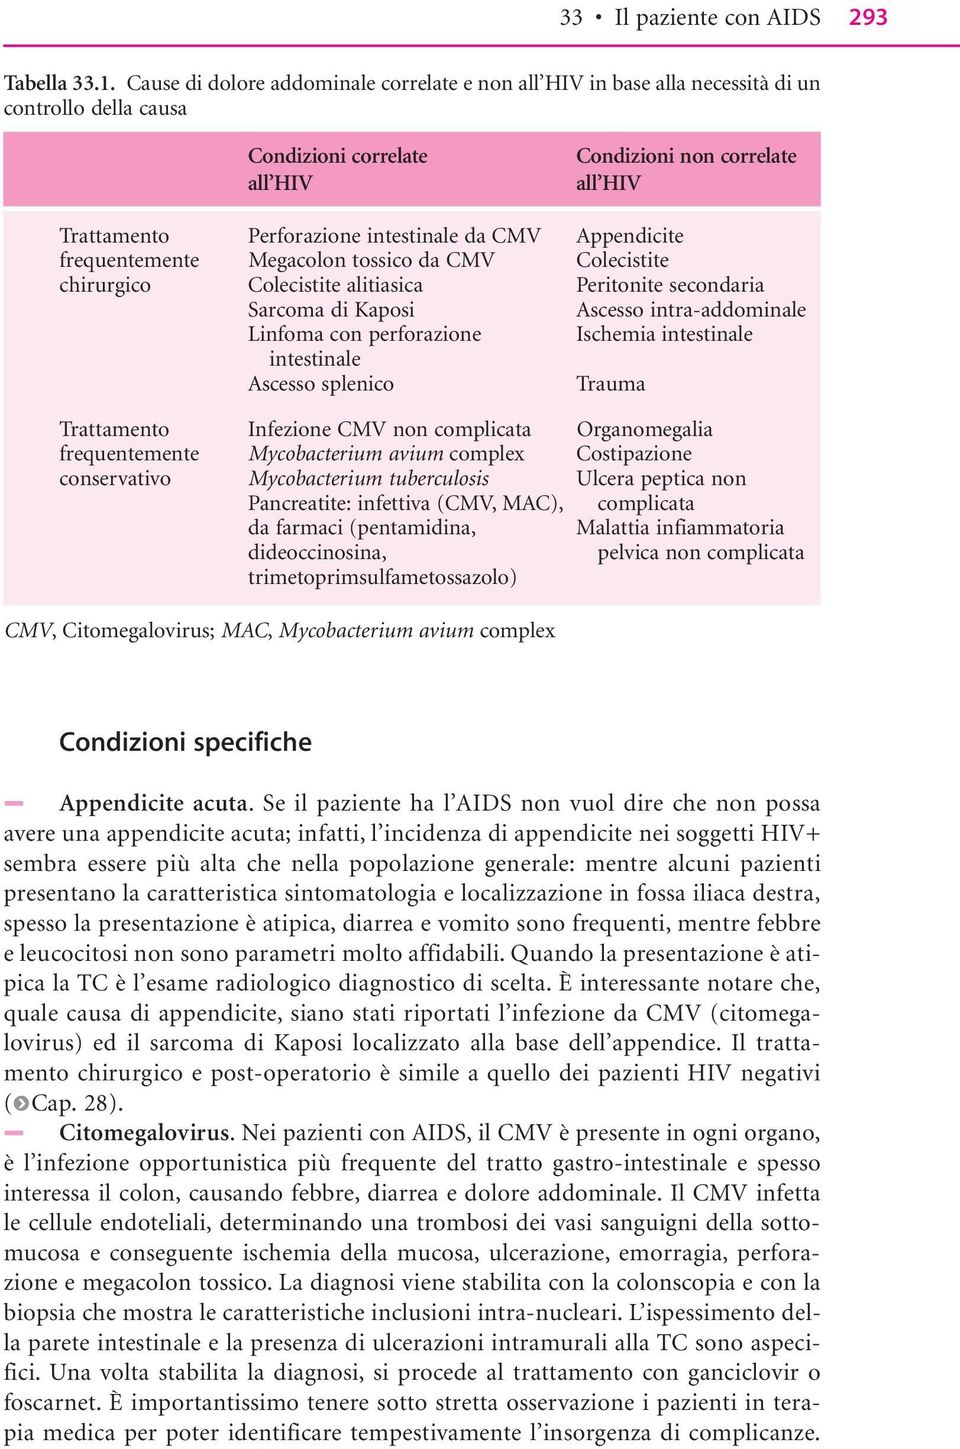 intestinale da CMV Appendicite frequentemente Megacolon tossico da CMV Colecistite chirurgico Colecistite alitiasica Peritonite secondaria Sarcoma di Kaposi Ascesso intra-addominale Linfoma con